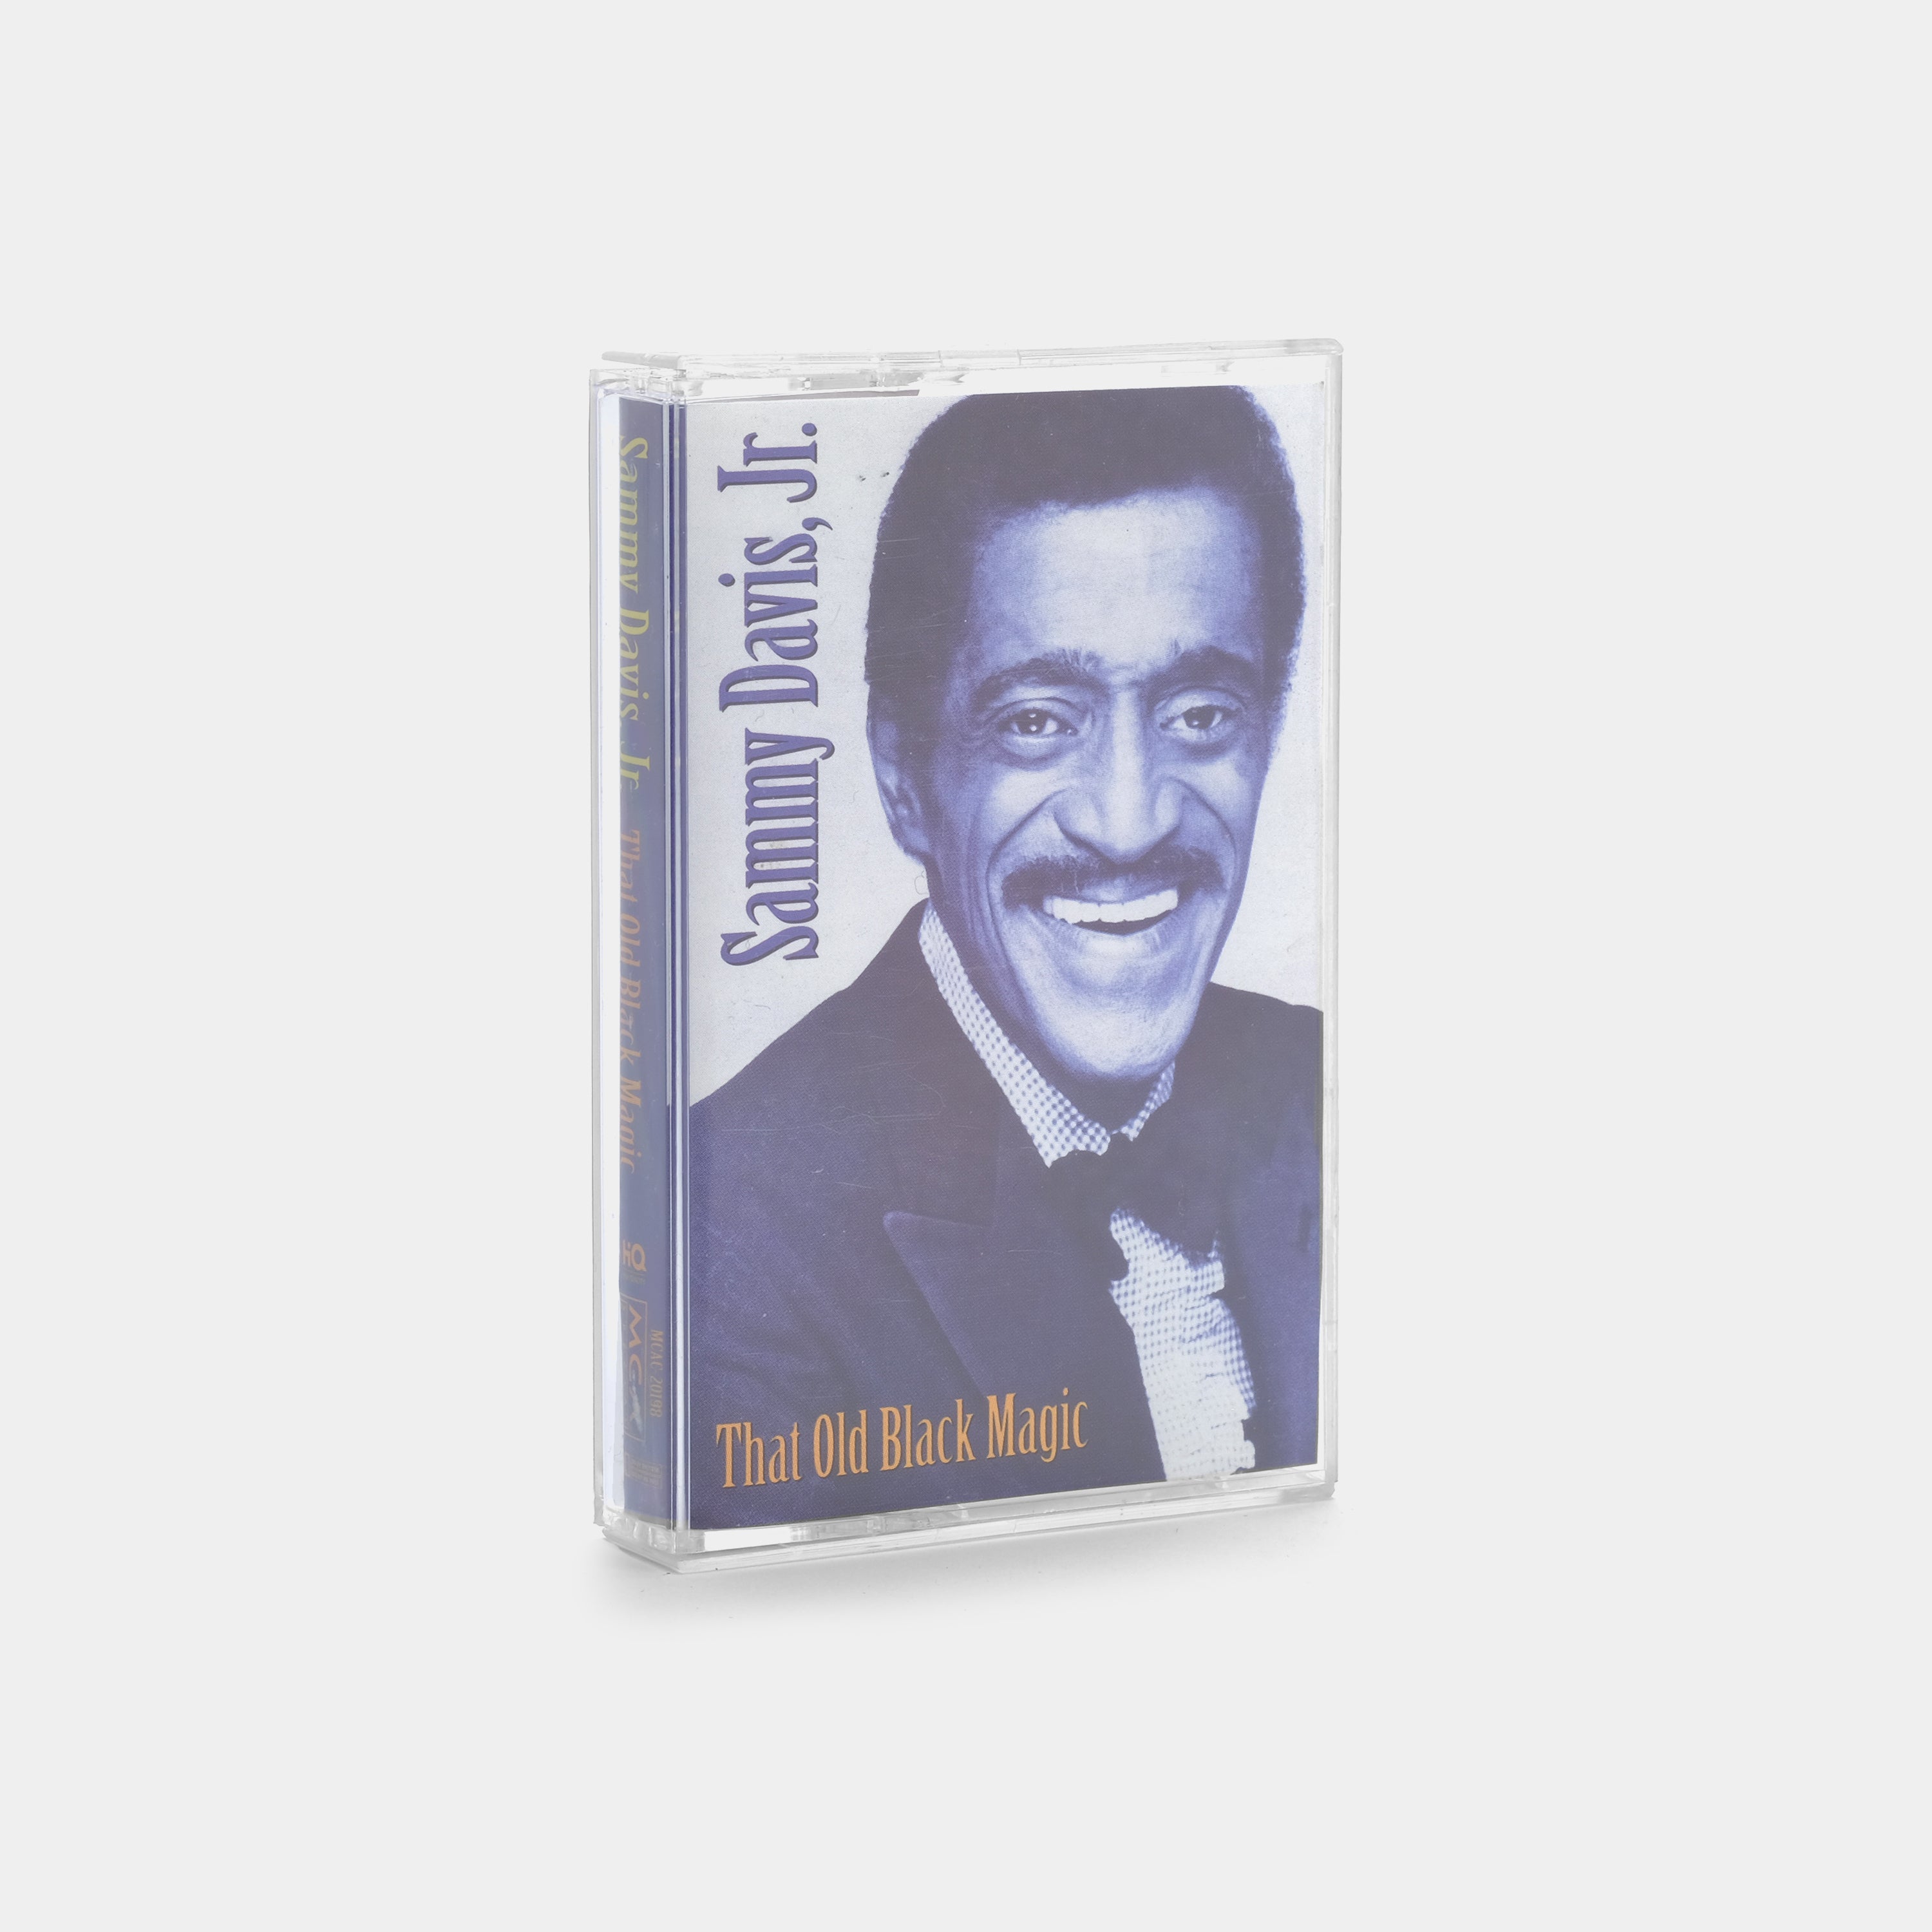 Sammy Davis Jr. - That Old Black Magic Cassette Tape